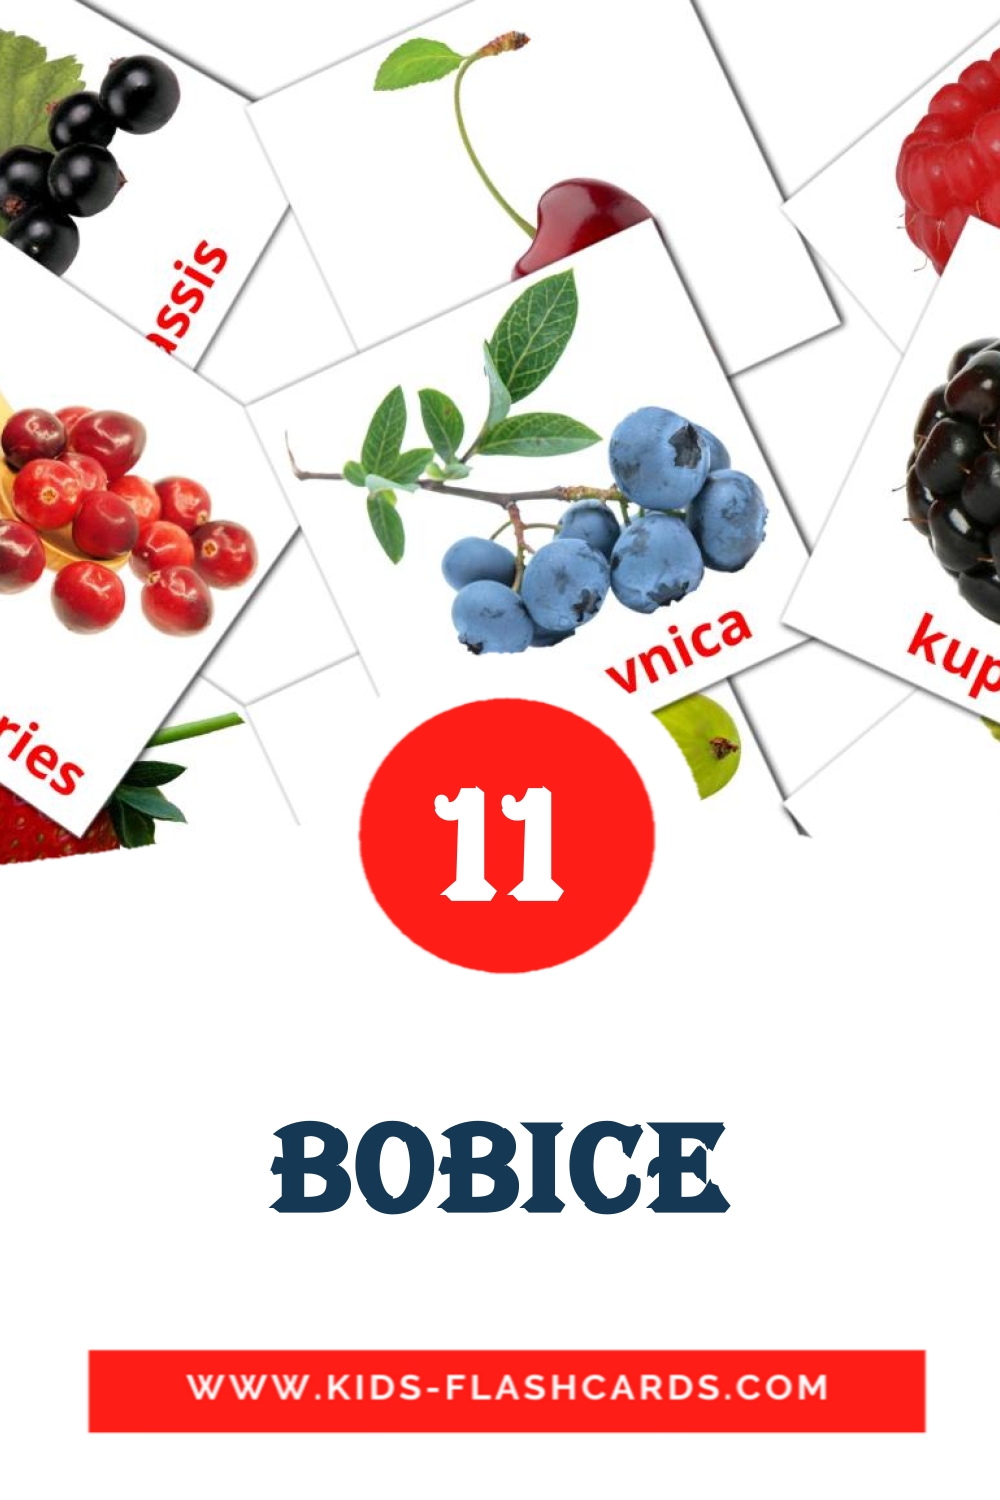 11 Bobice fotokaarten voor kleuters in het bosnisch